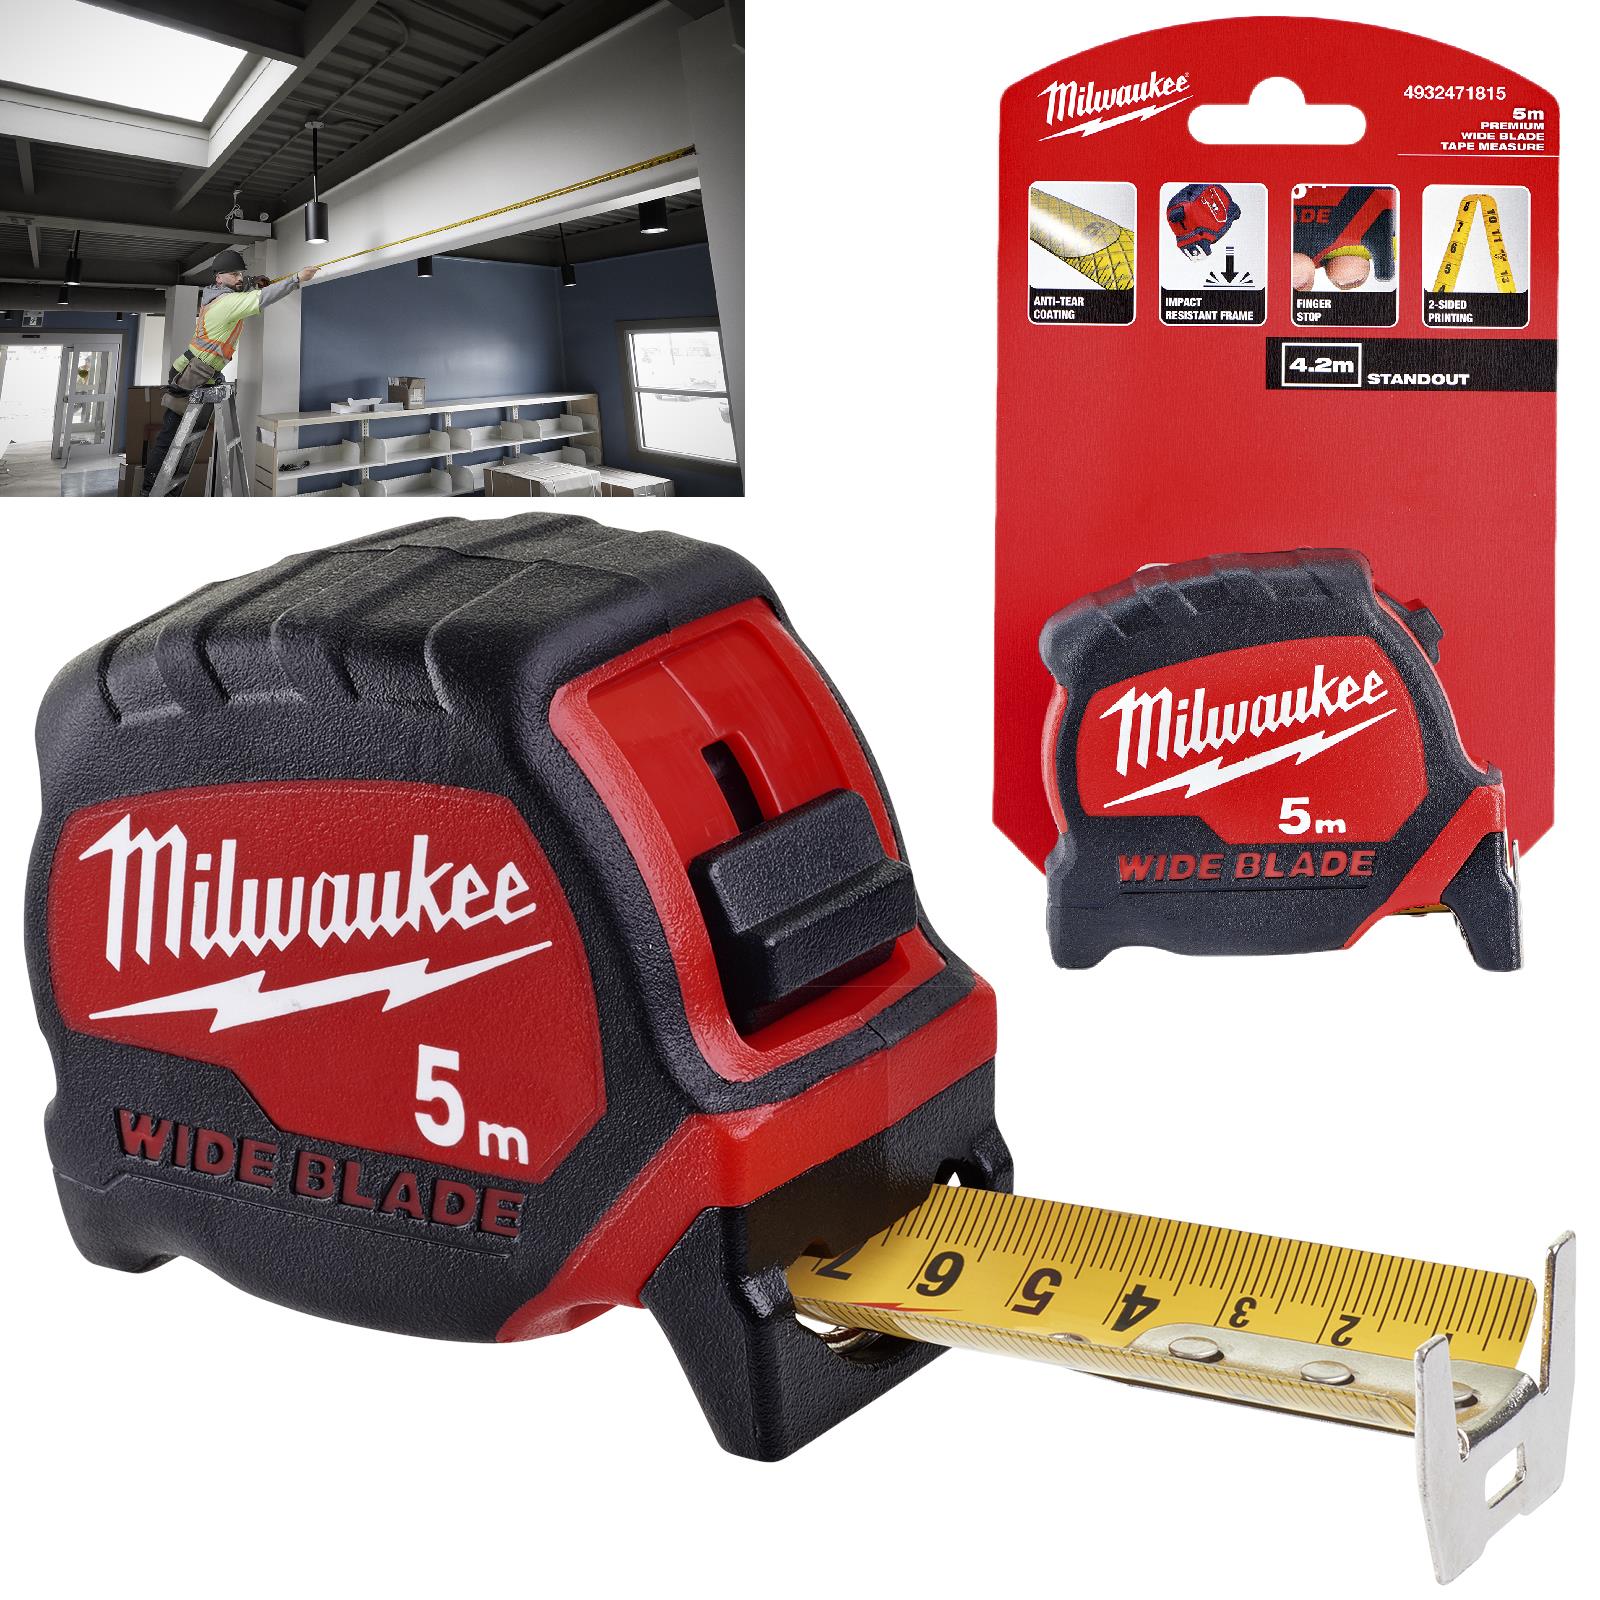 Milwaukee Tape measure STUD GEN II - 8 m - MILWAUKEE 4932471627